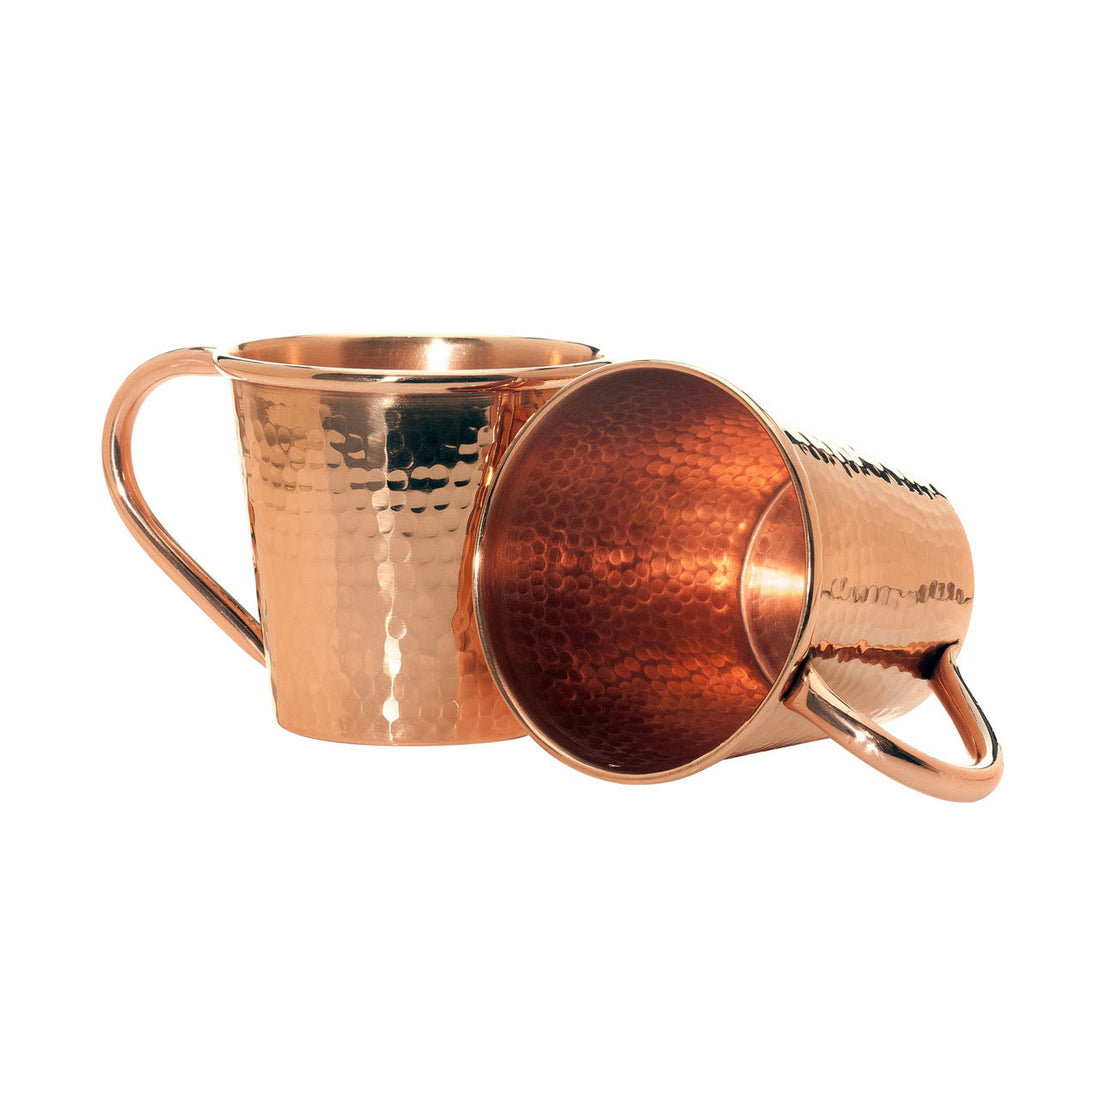 Sertodo Copper Copper Mixing Bowl, 10